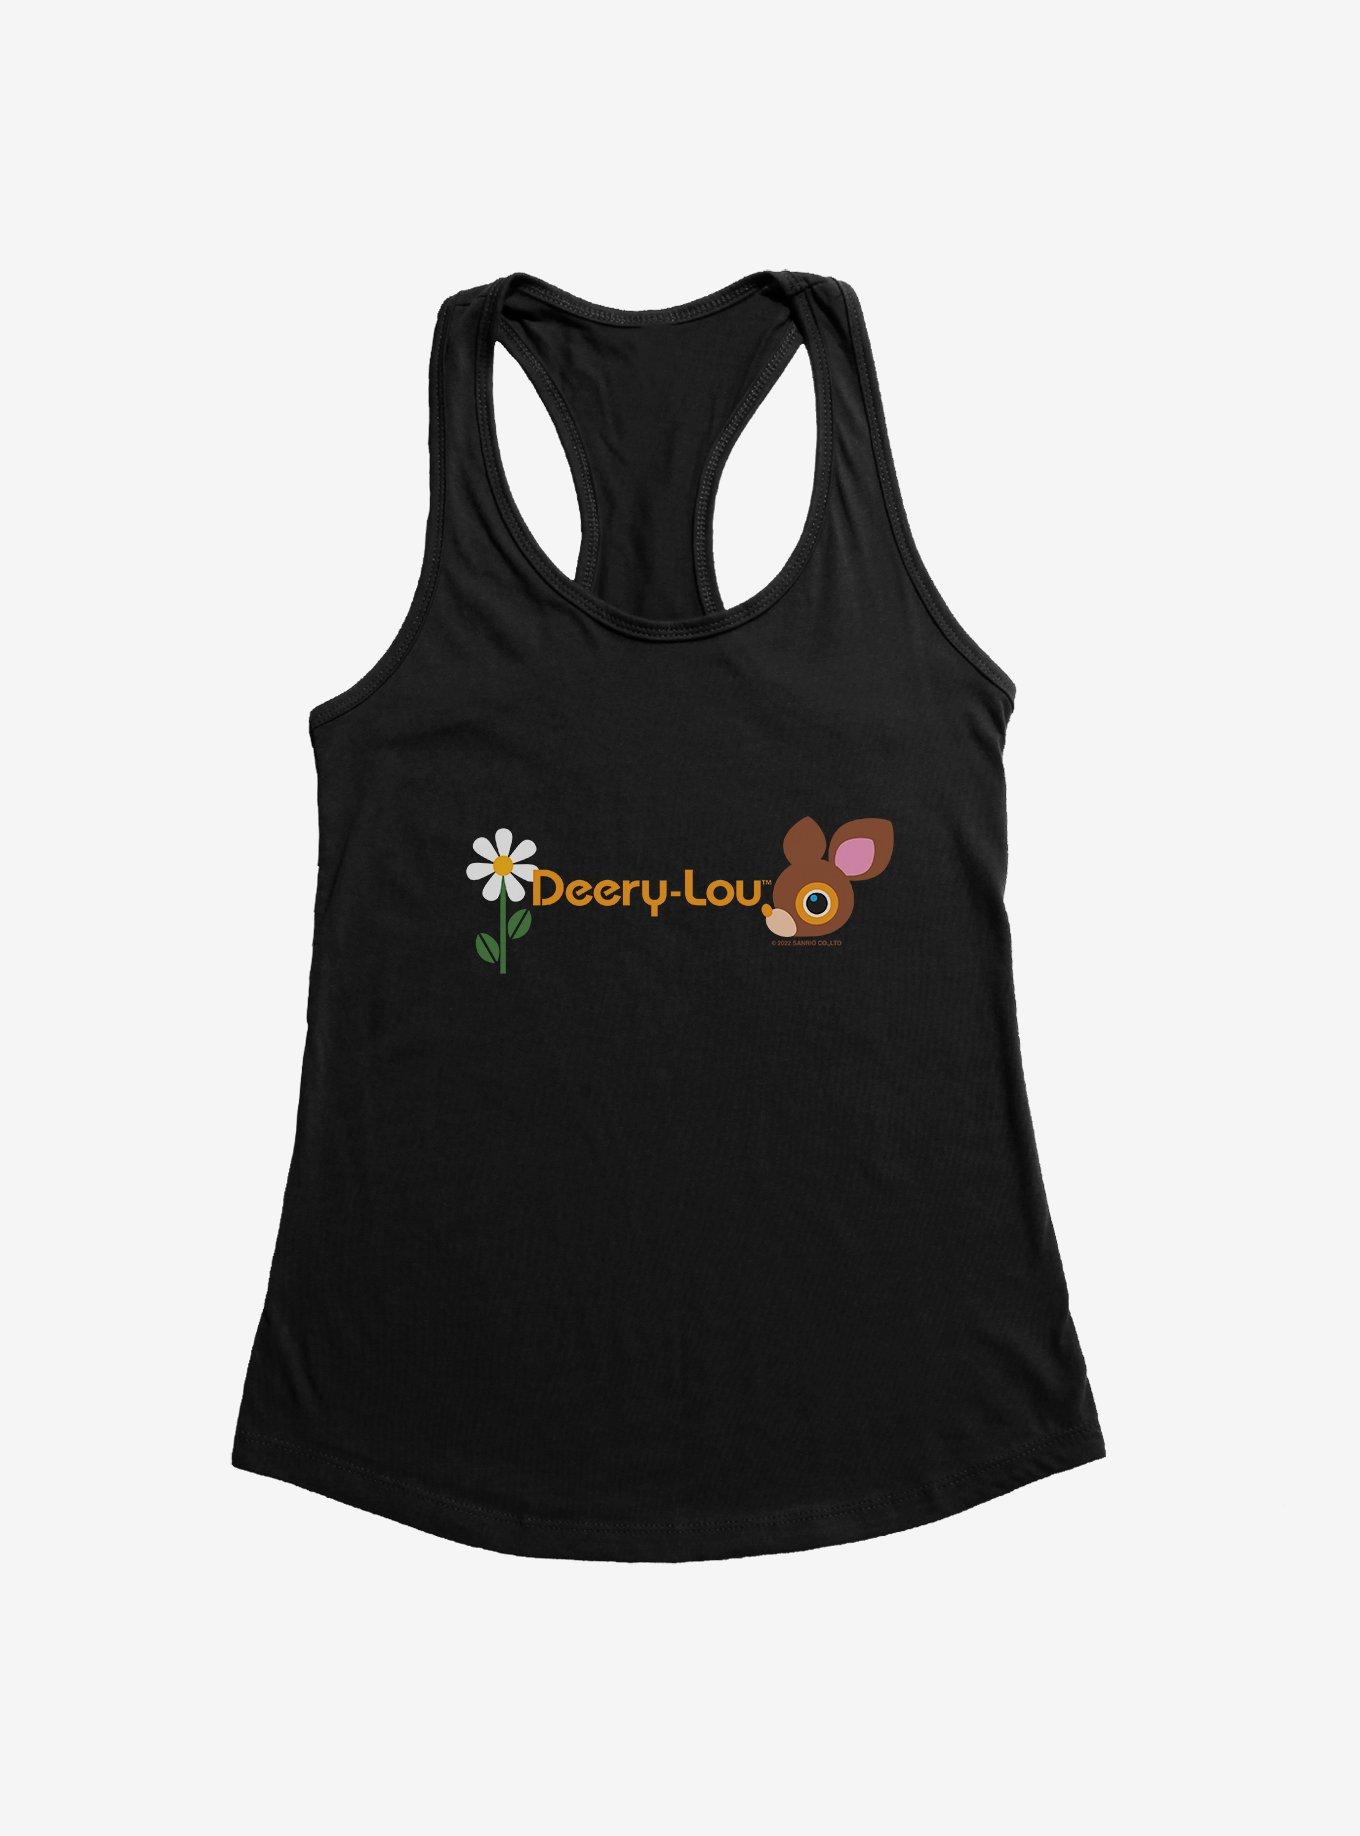 Deery-Lou Flower Logo Girls Tank